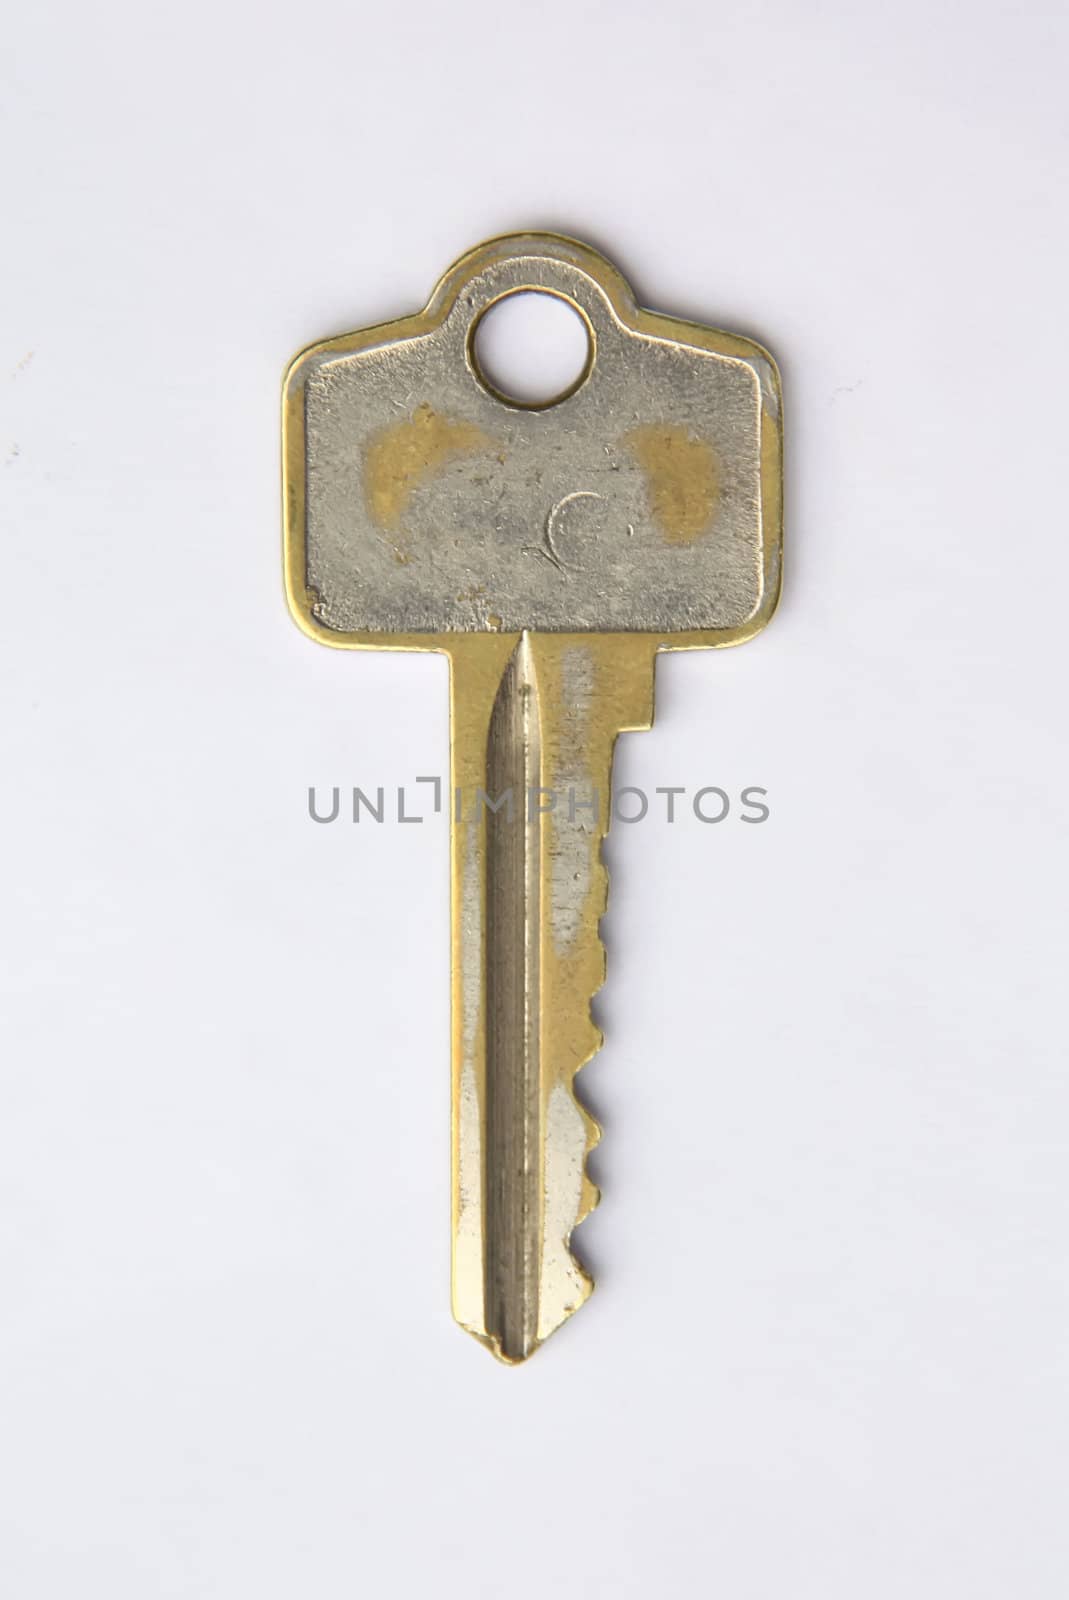 Key by phanlop88